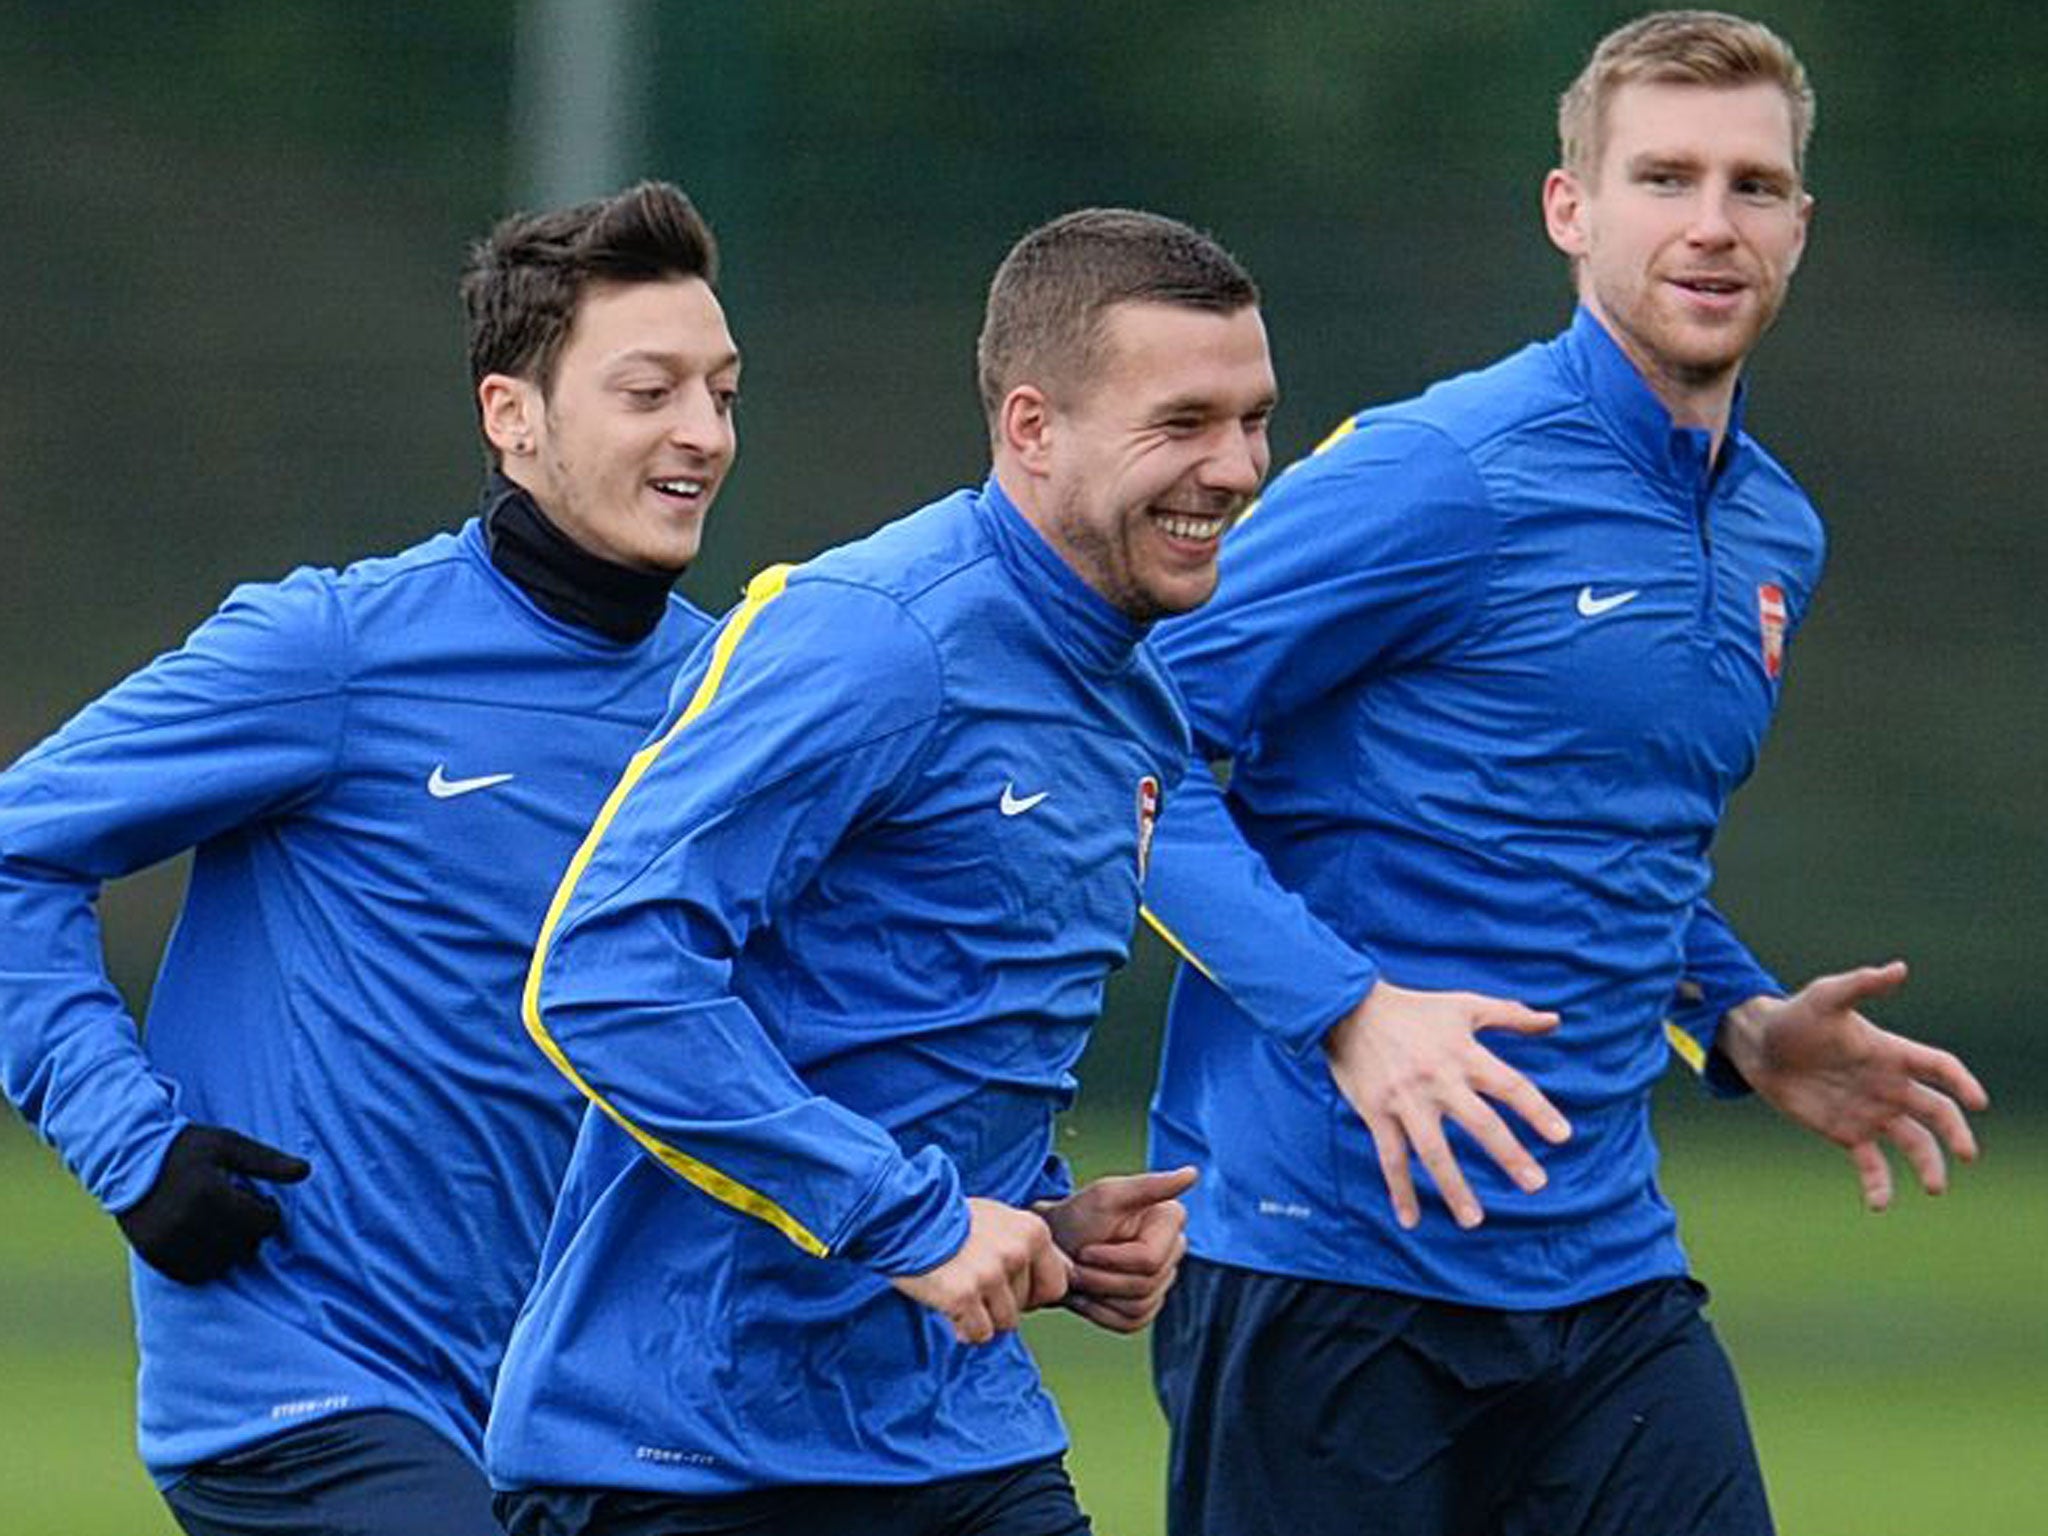 Arsenal’s German contingent of (left to right) Mesut Özil, Lukas Podolski and Per Mertesacker share a joke in training yesterda